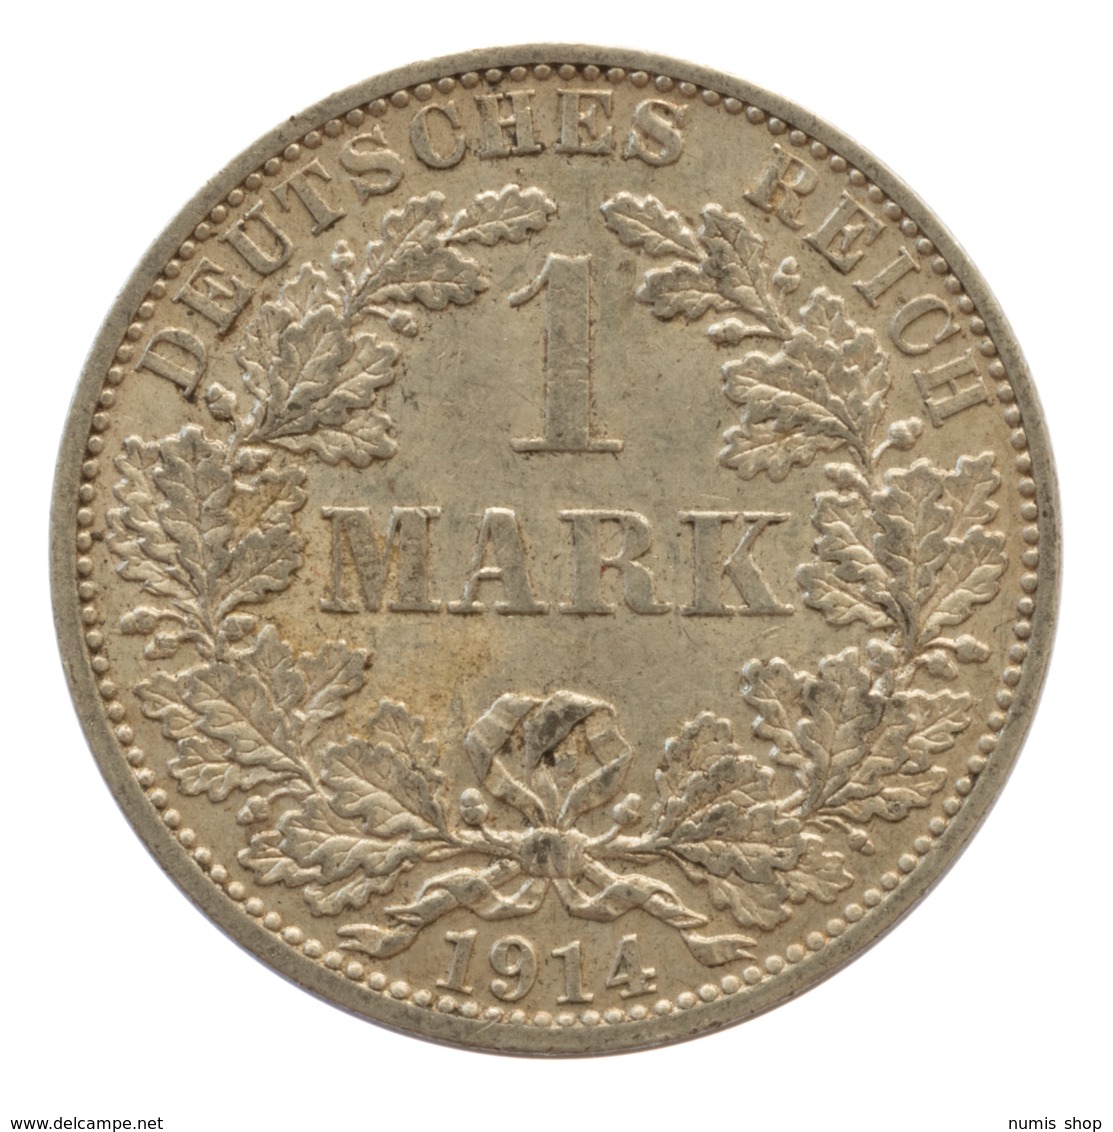 GERMANY - EMPIRE - 1 Mark - 1914 - A - Berlin - Silver - #DE066 - 1 Mark